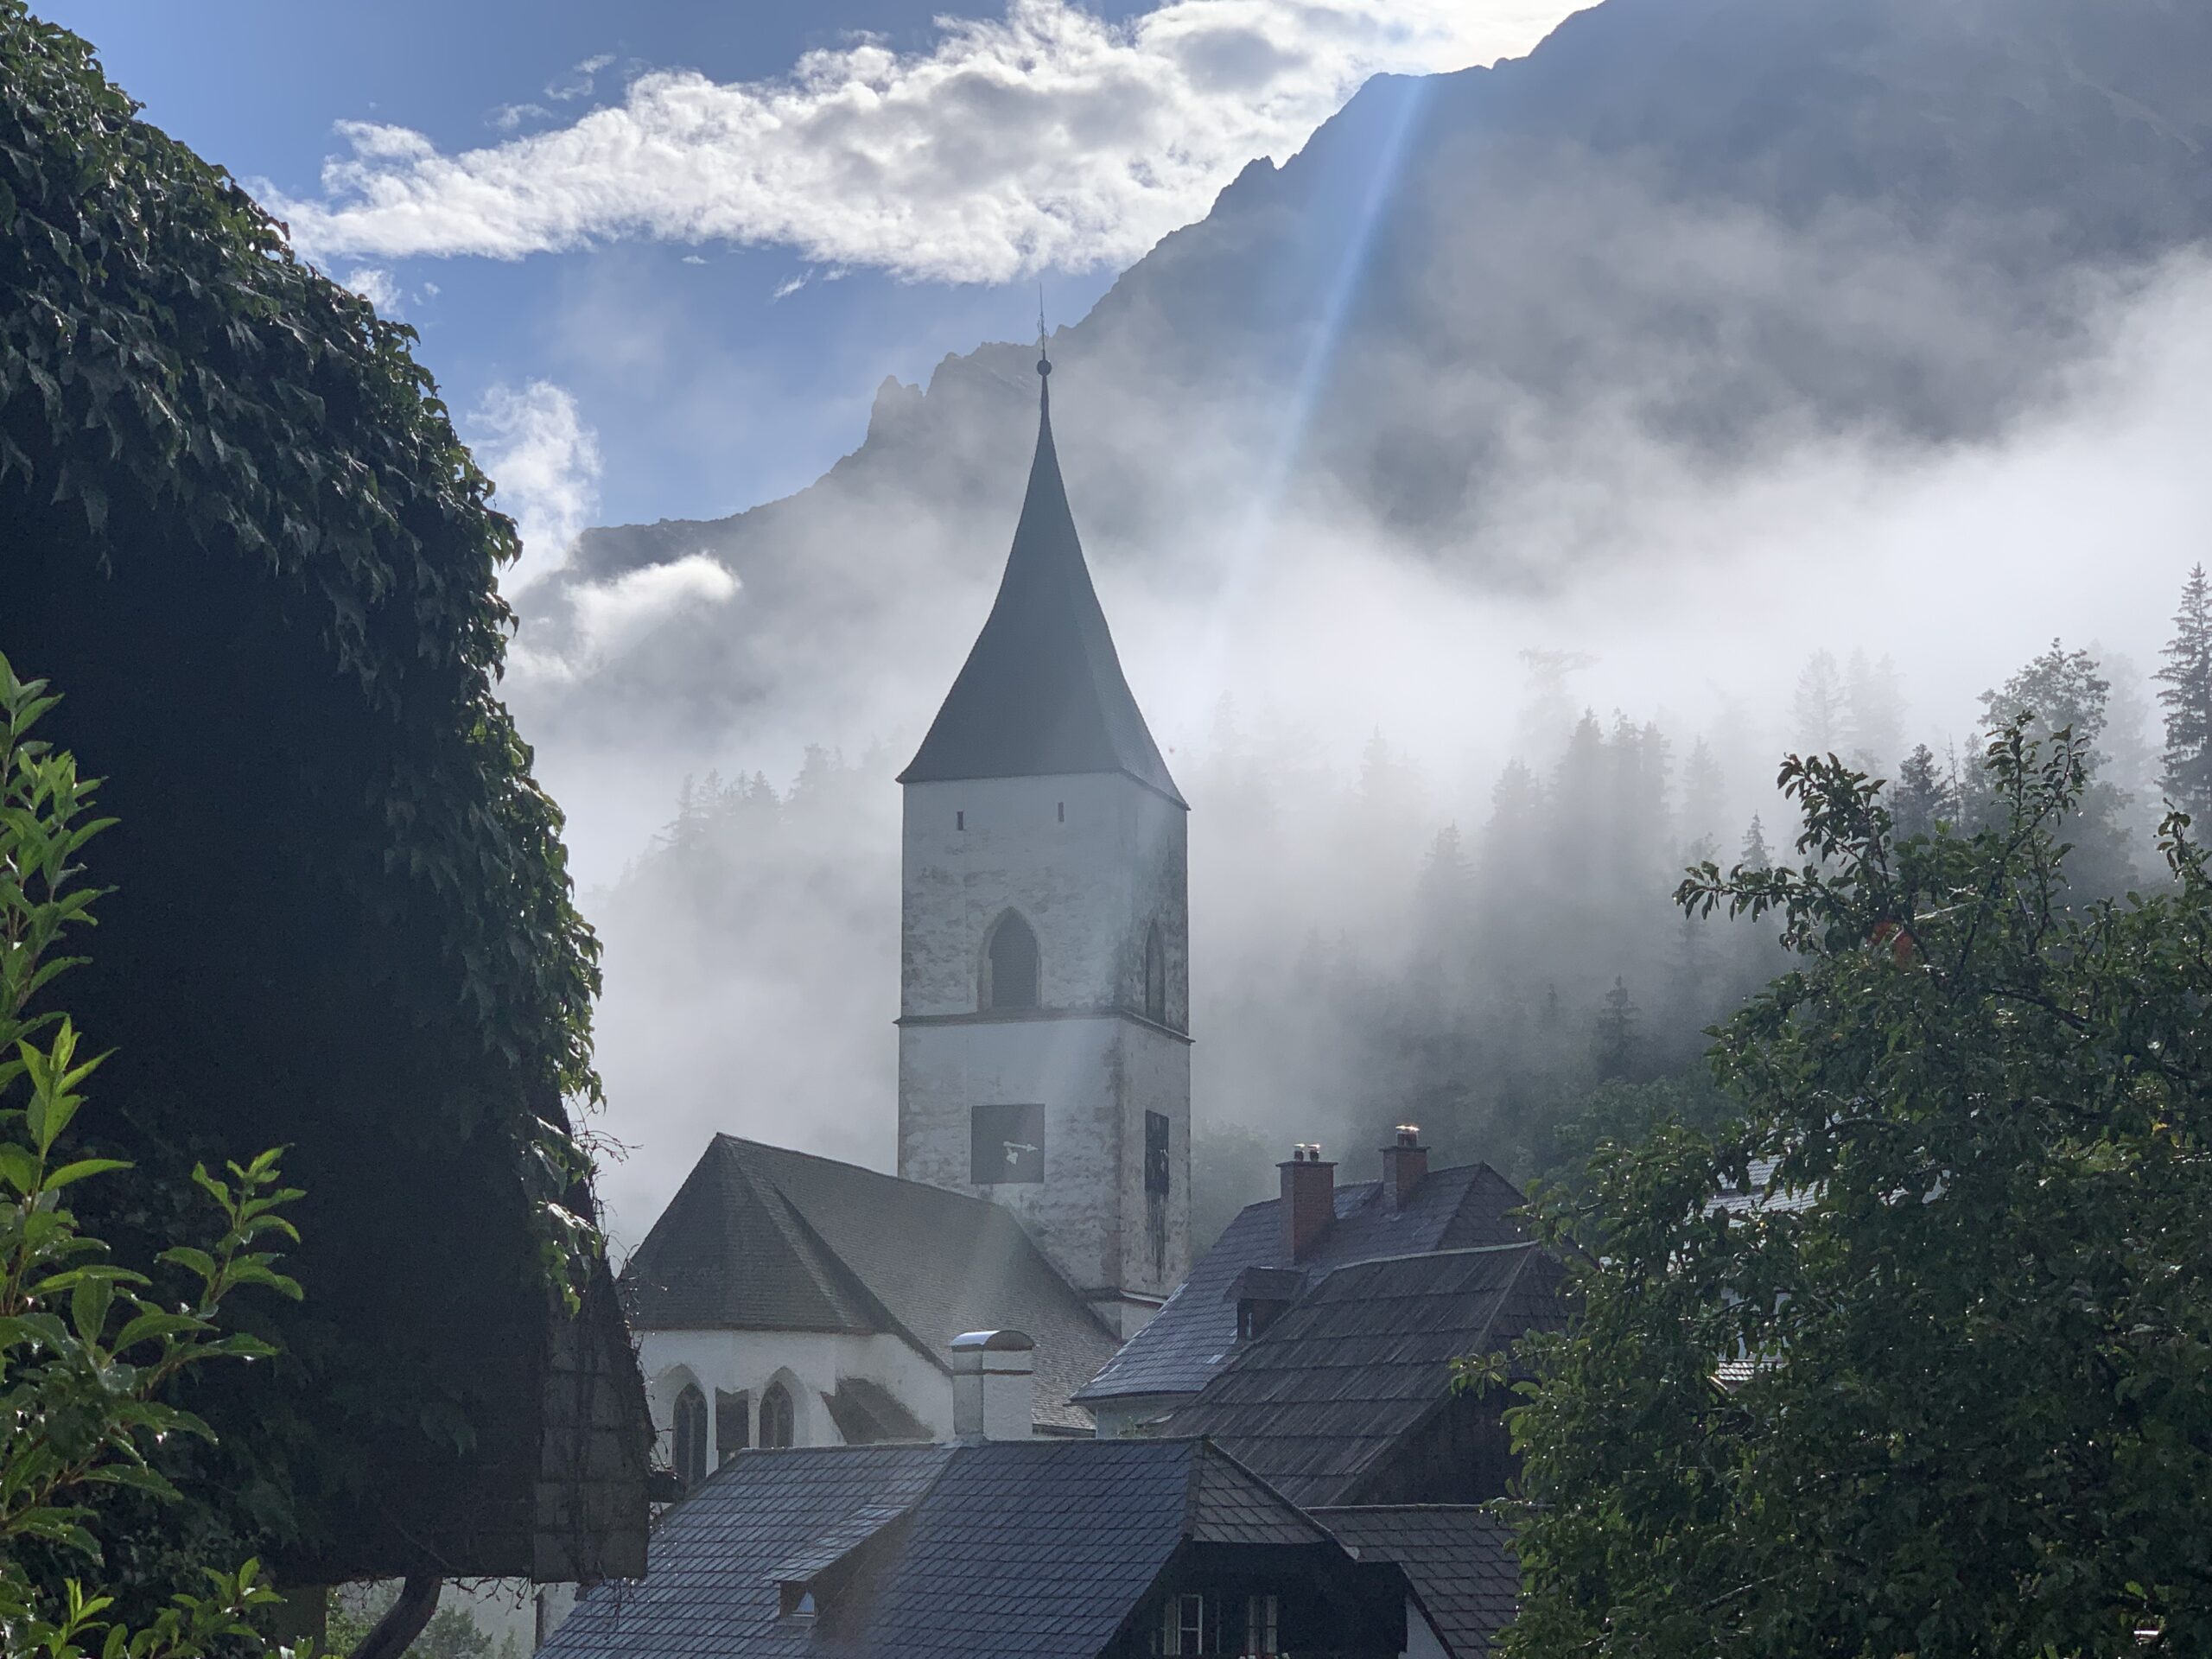 Wunderschönes selbstgemachtes Foto der kleinen Kirche von Pürgg in Österreich.